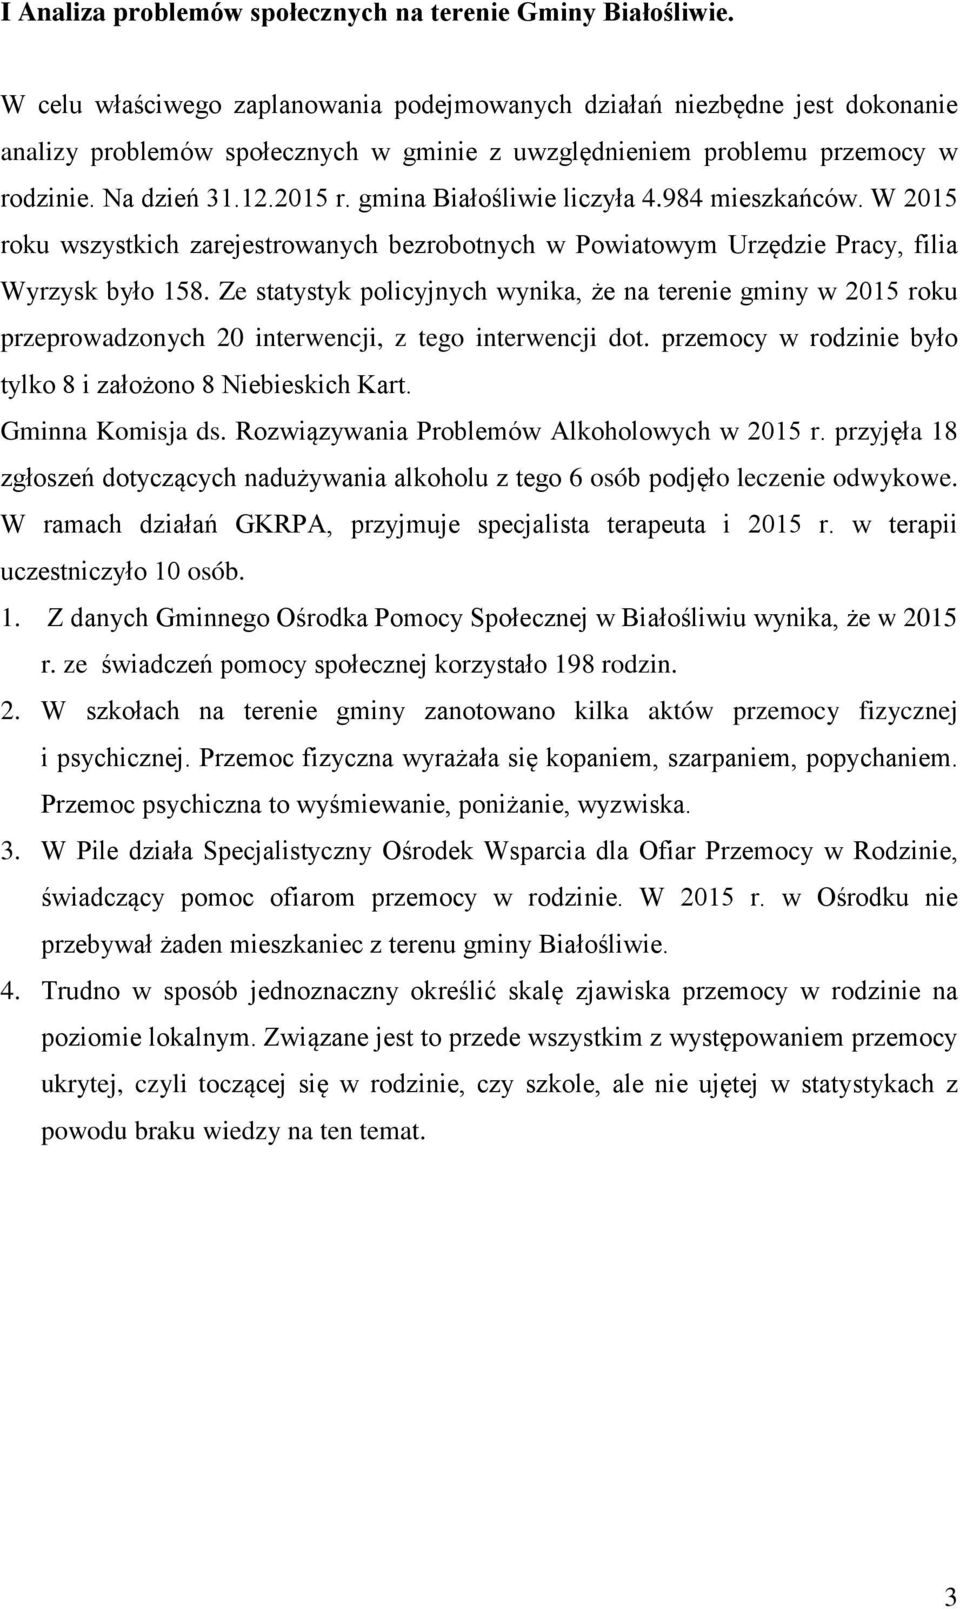 gmina Białośliwie liczyła 4.984 mieszkańców. W 2015 roku wszystkich zarejestrowanych bezrobotnych w Powiatowym Urzędzie Pracy, filia Wyrzysk było 158.